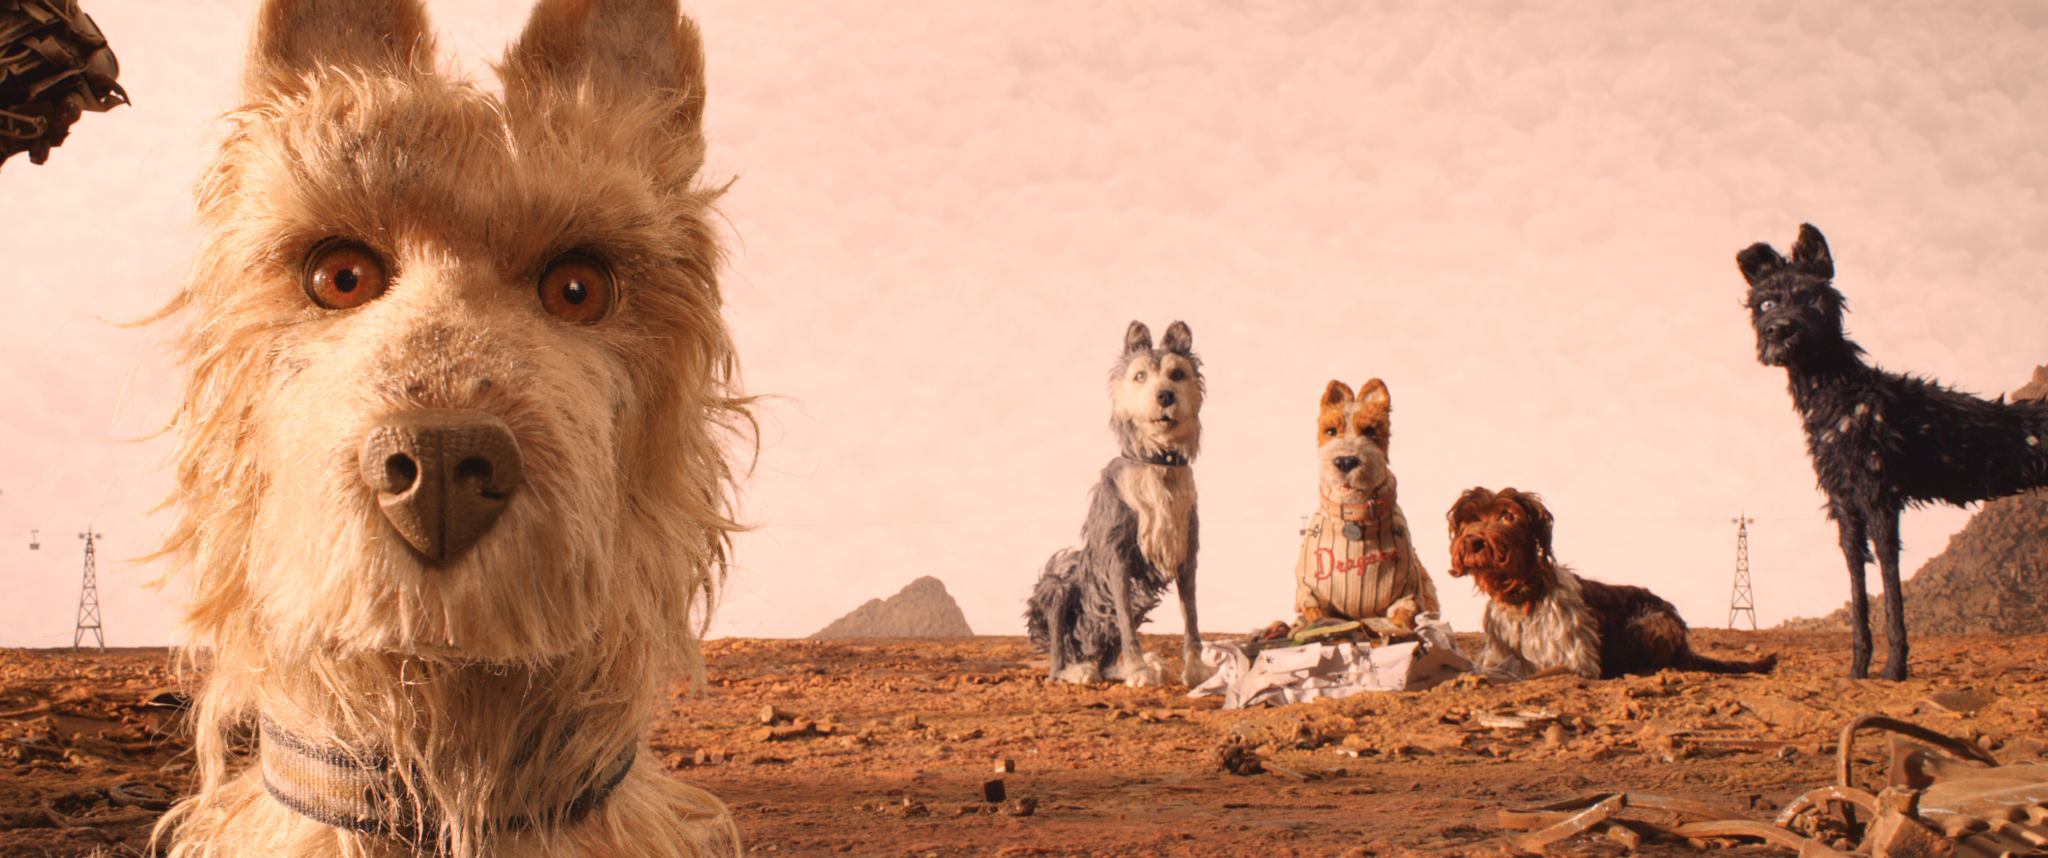 Wes Anderson amplía su universo con la premiada ‘Isla de perros’